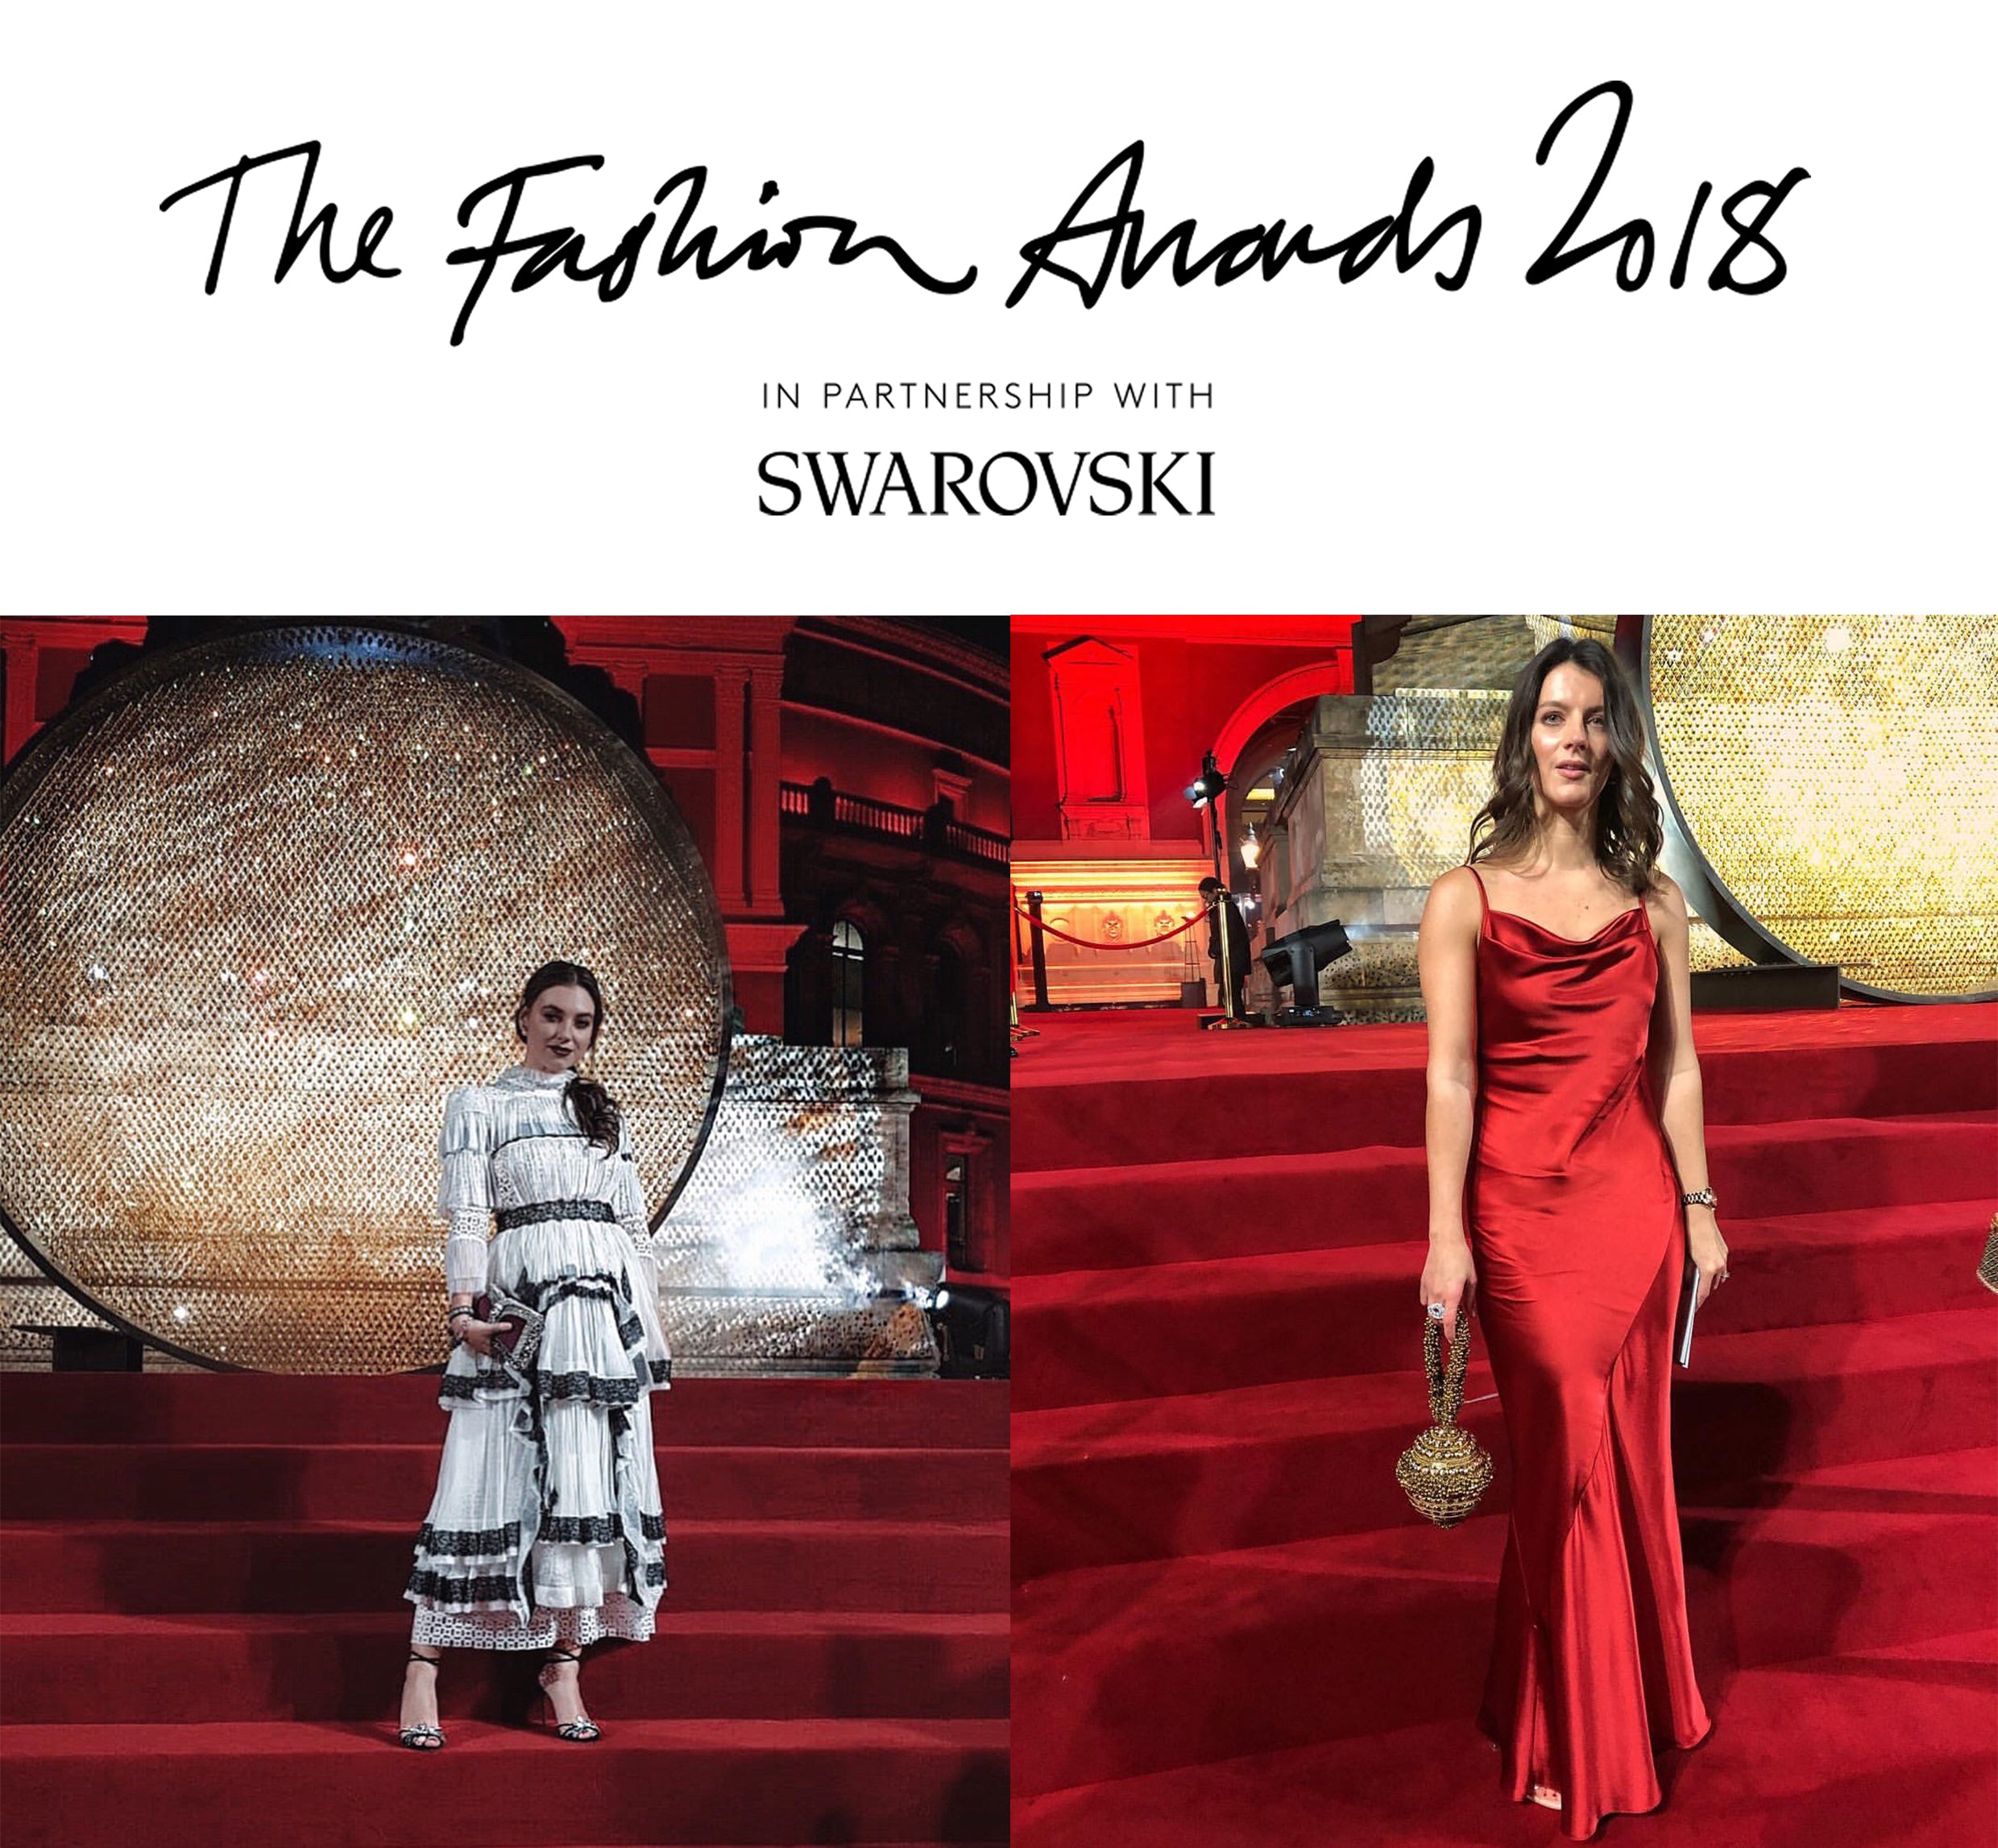 Louis Vuitton @ 2018 Met Gala - Red Carpet Fashion Awards